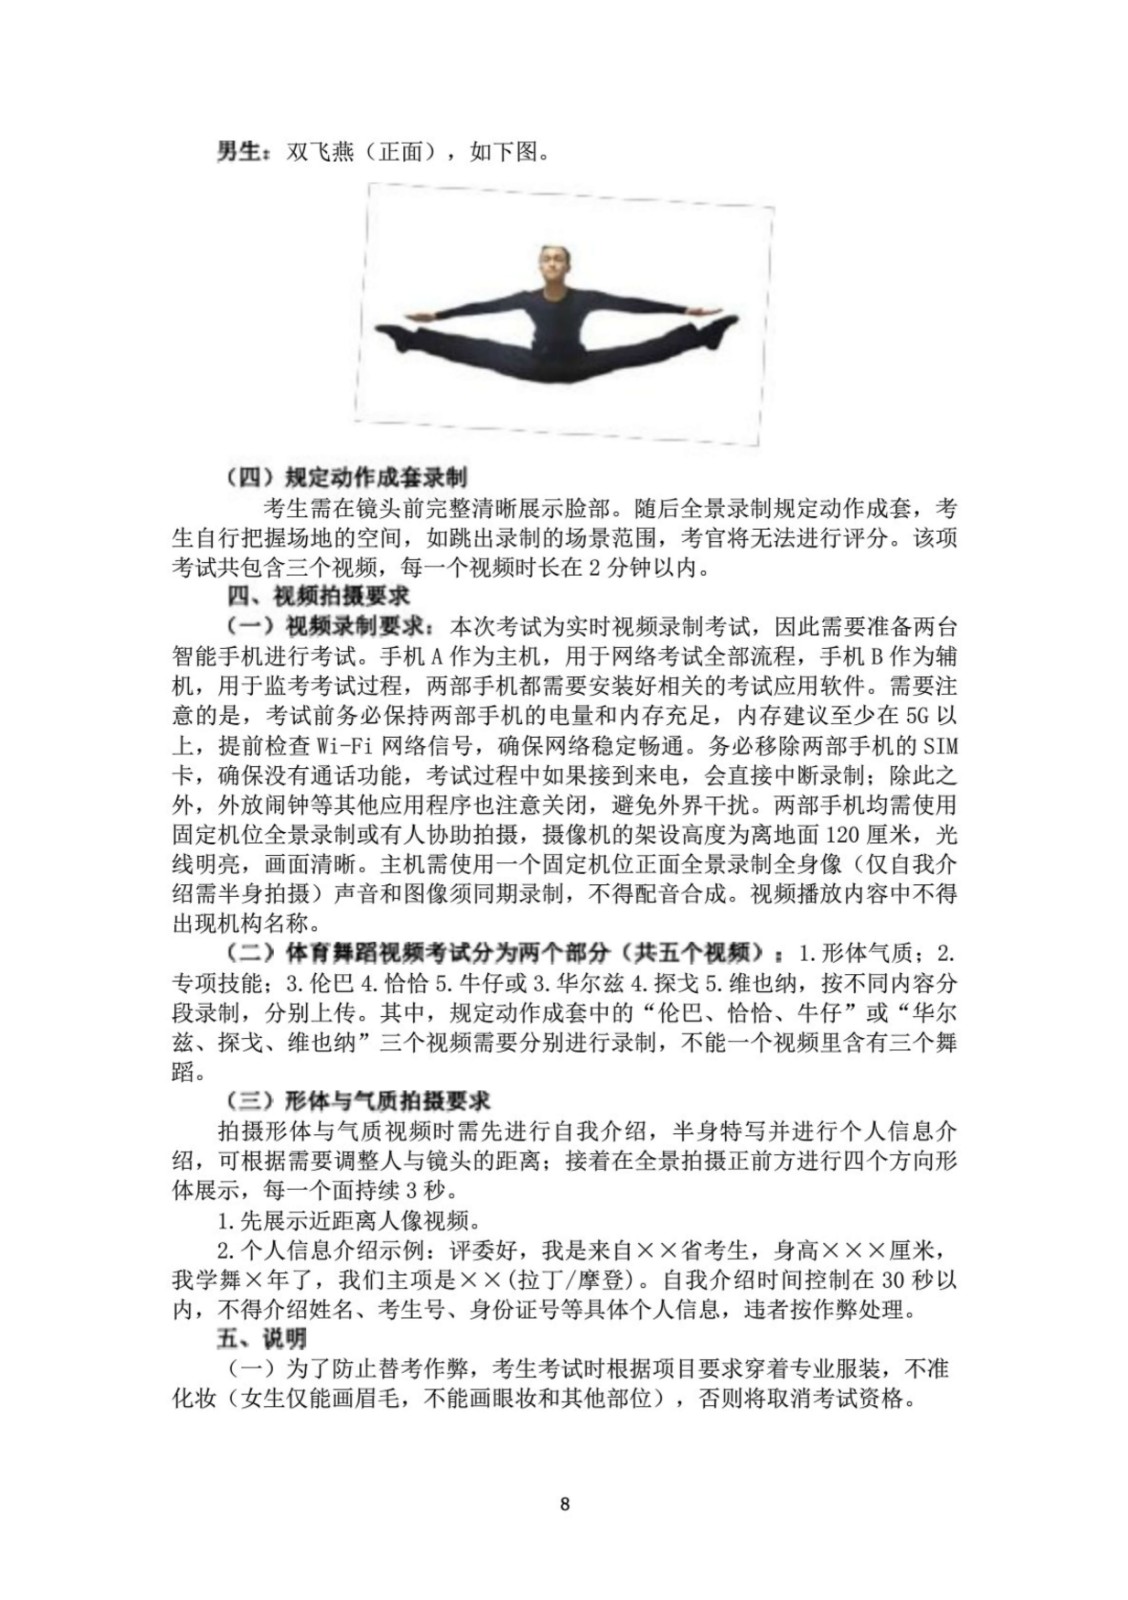 2022年广州体育学院舞蹈学、舞蹈表演专业专业校考实施办法、测试指标、测试方法与评分标准、视频录制方式及拍摄要求